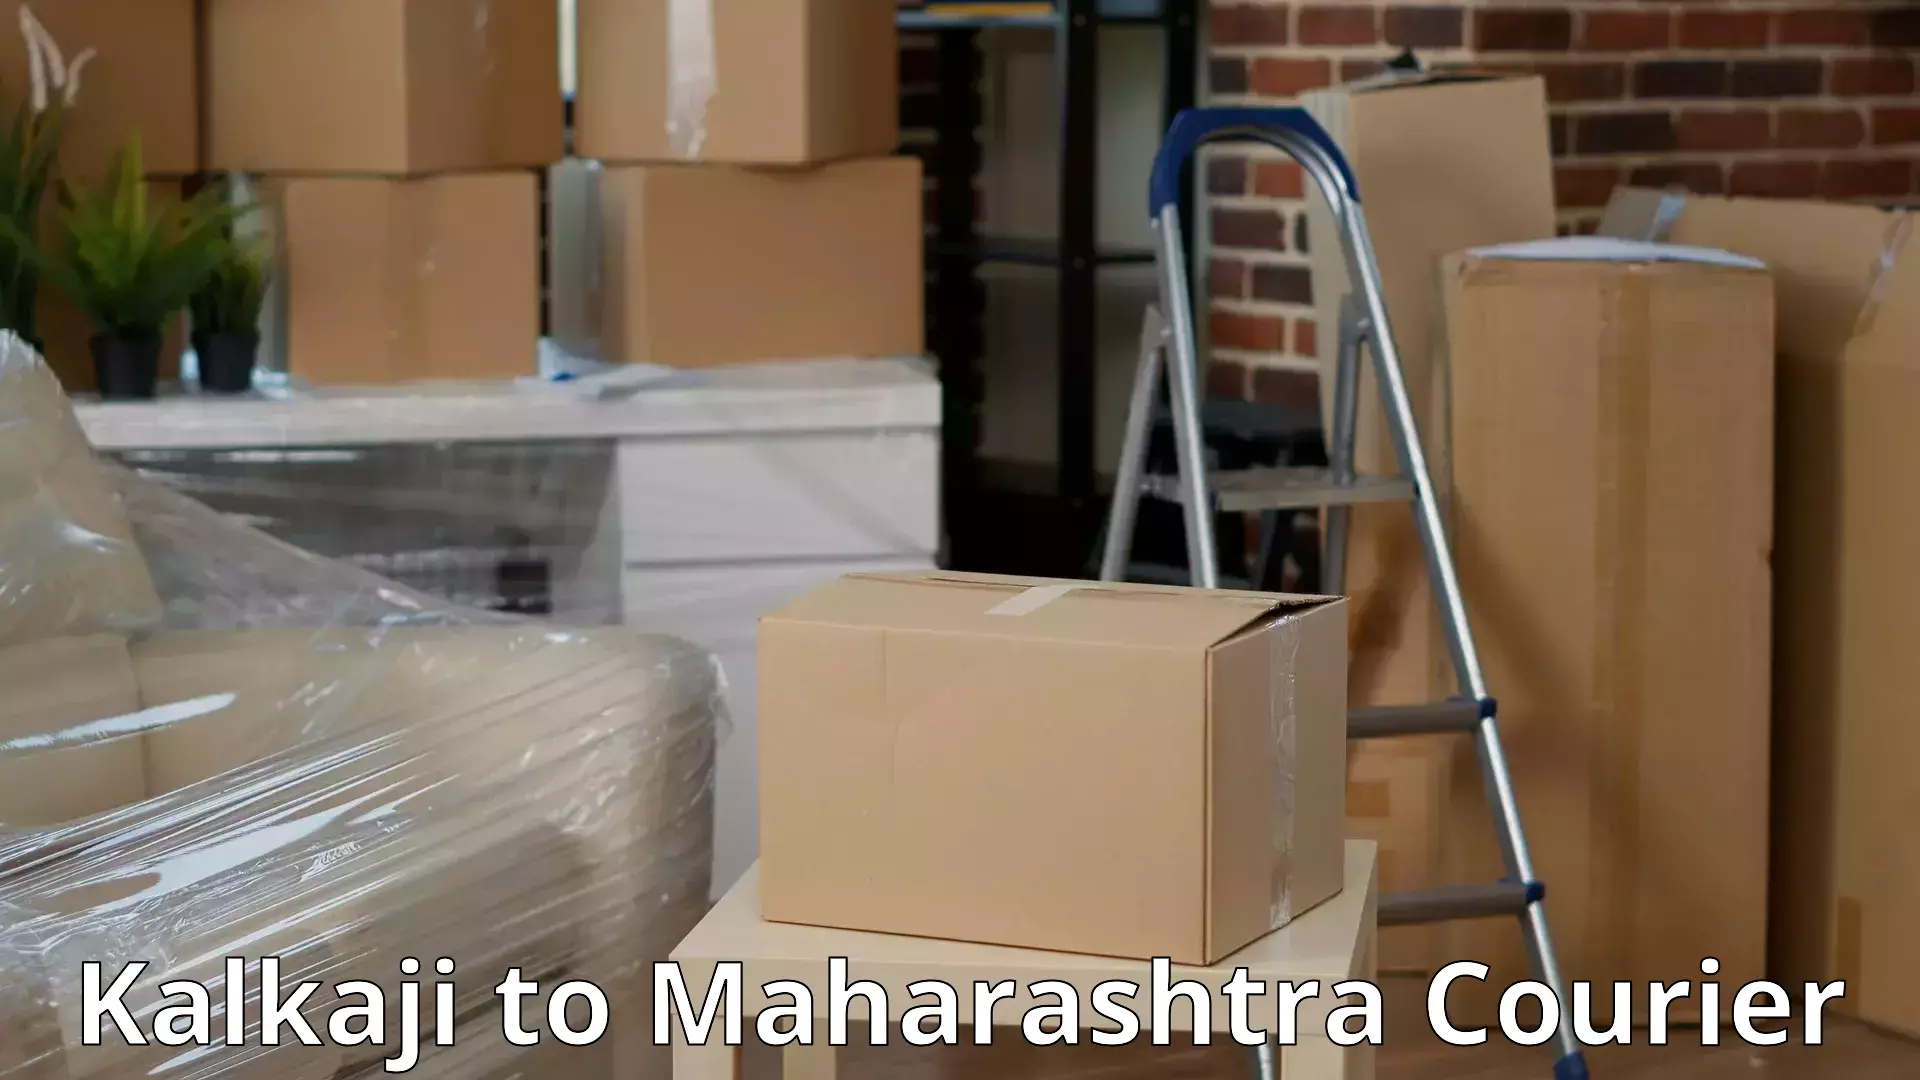 Household transport experts Kalkaji to Maharashtra